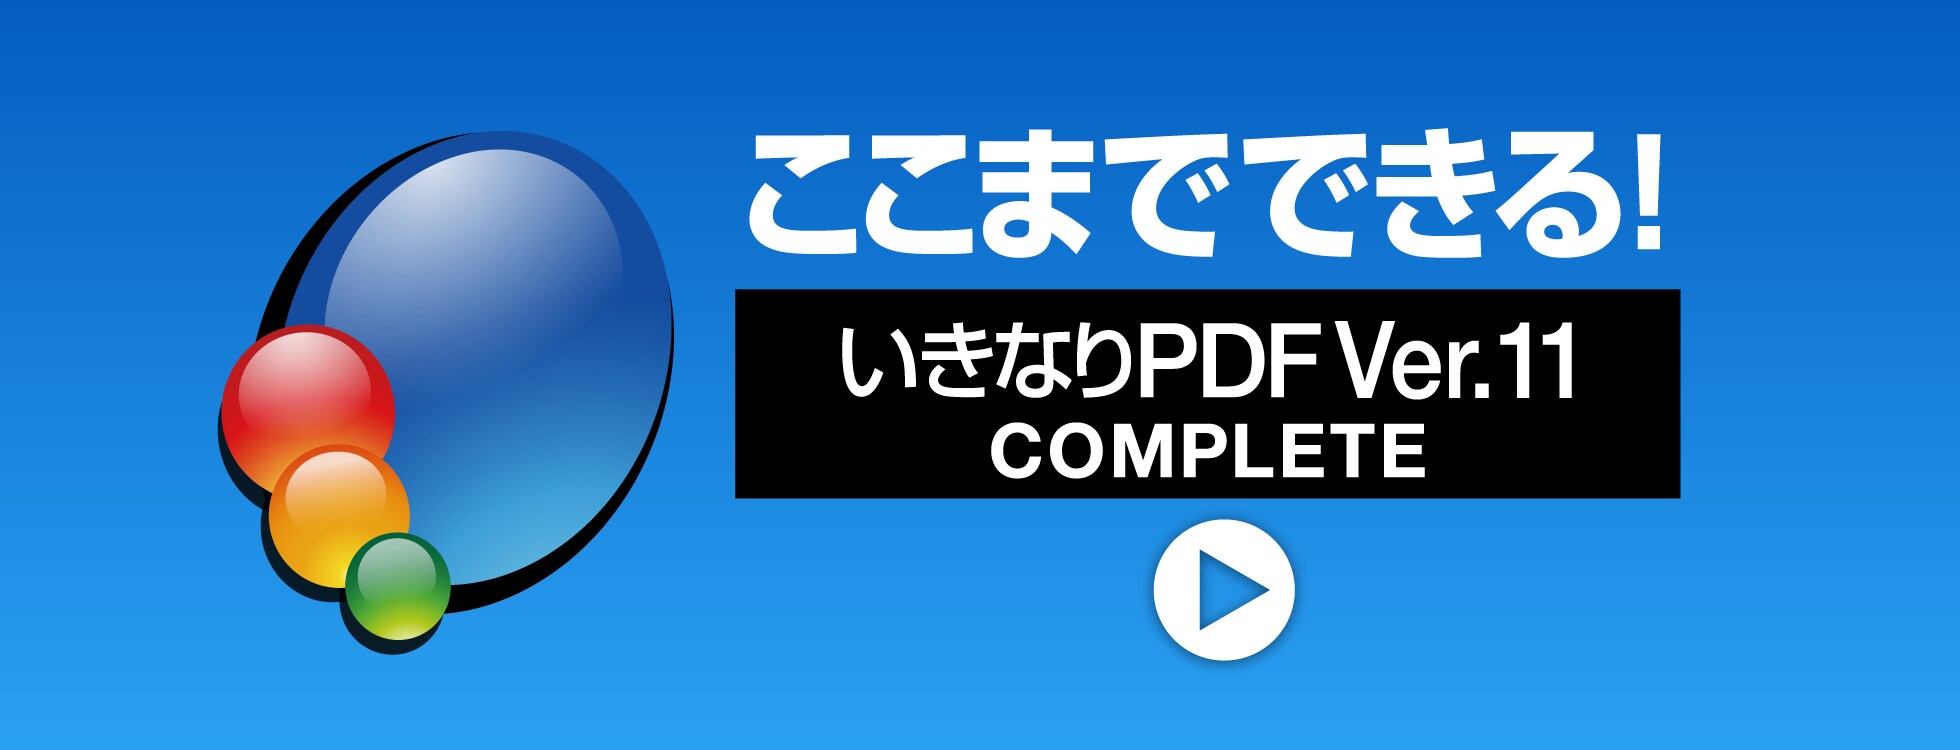 ここまでできる！「いきなりPDF Ver.11 COMPLETE」 - 公式ガイドムービー